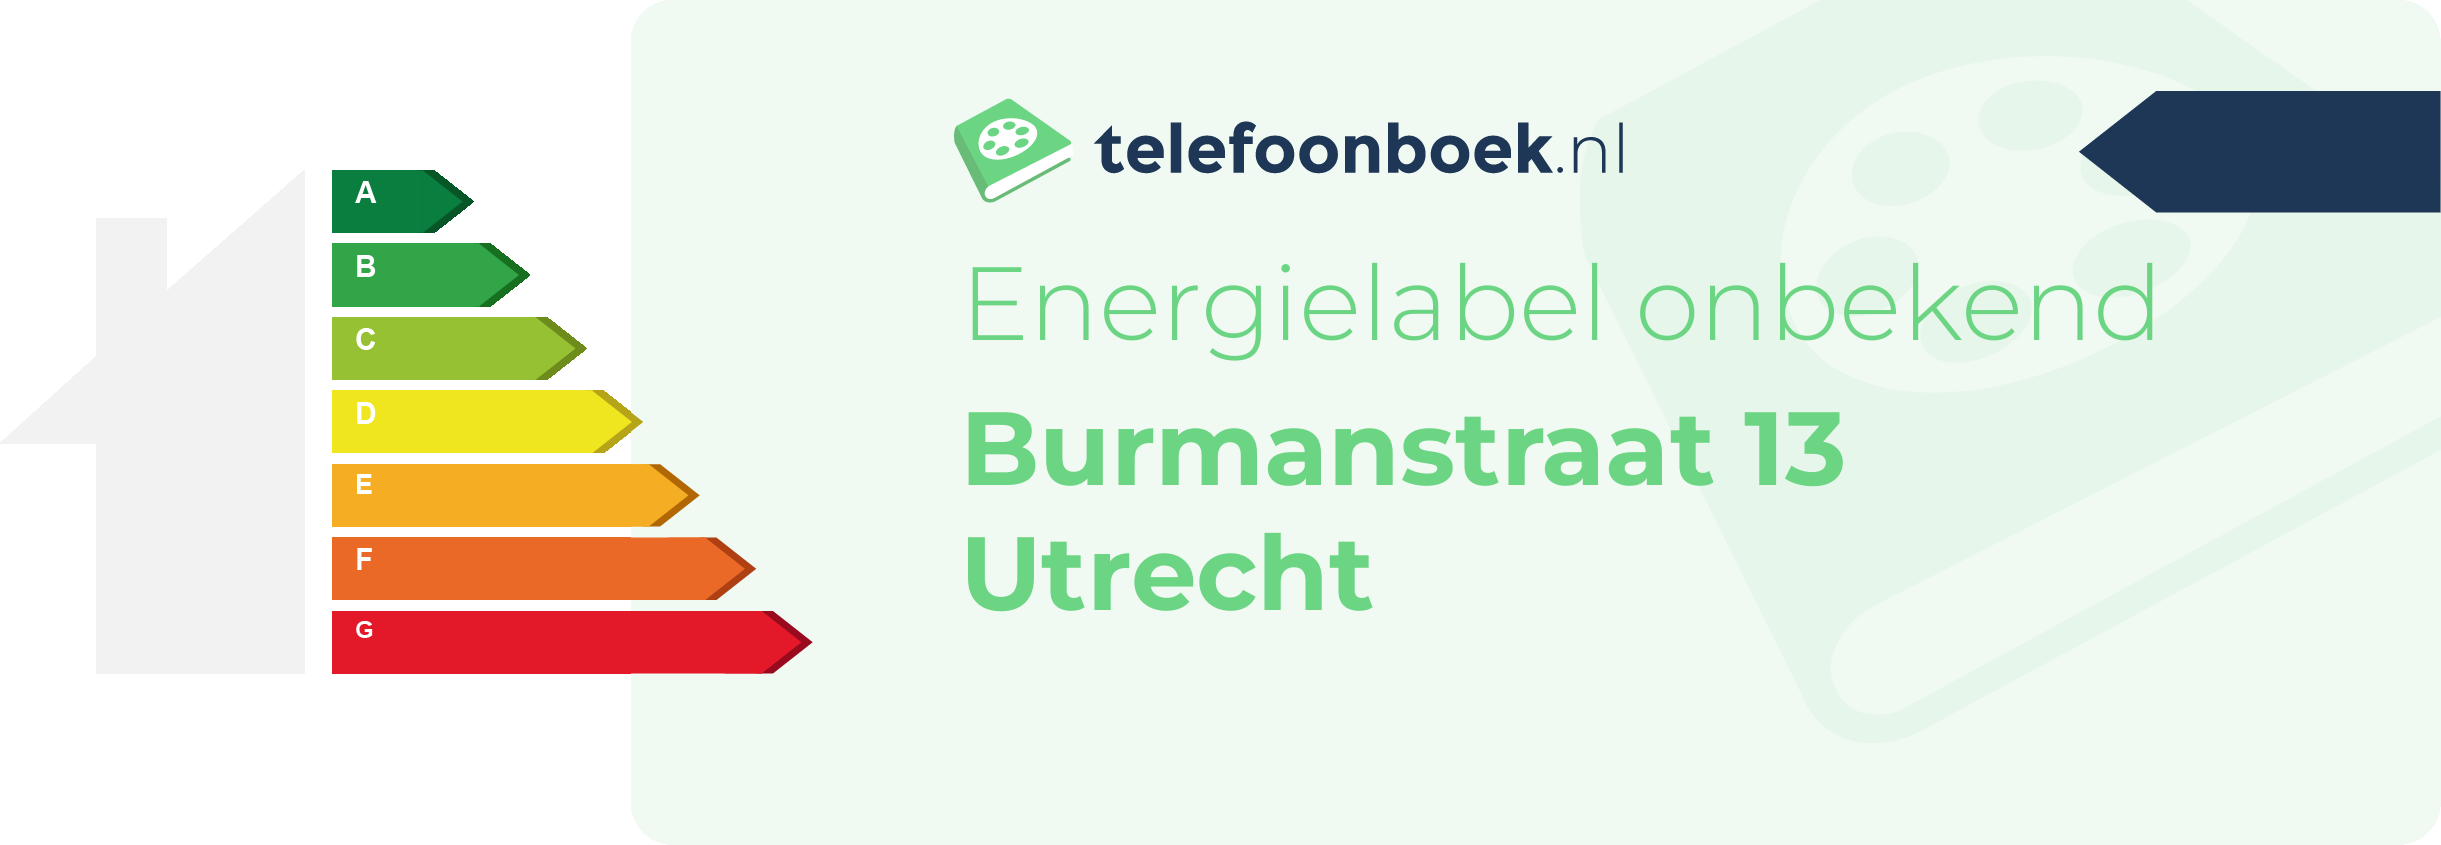 Energielabel Burmanstraat 13 Utrecht